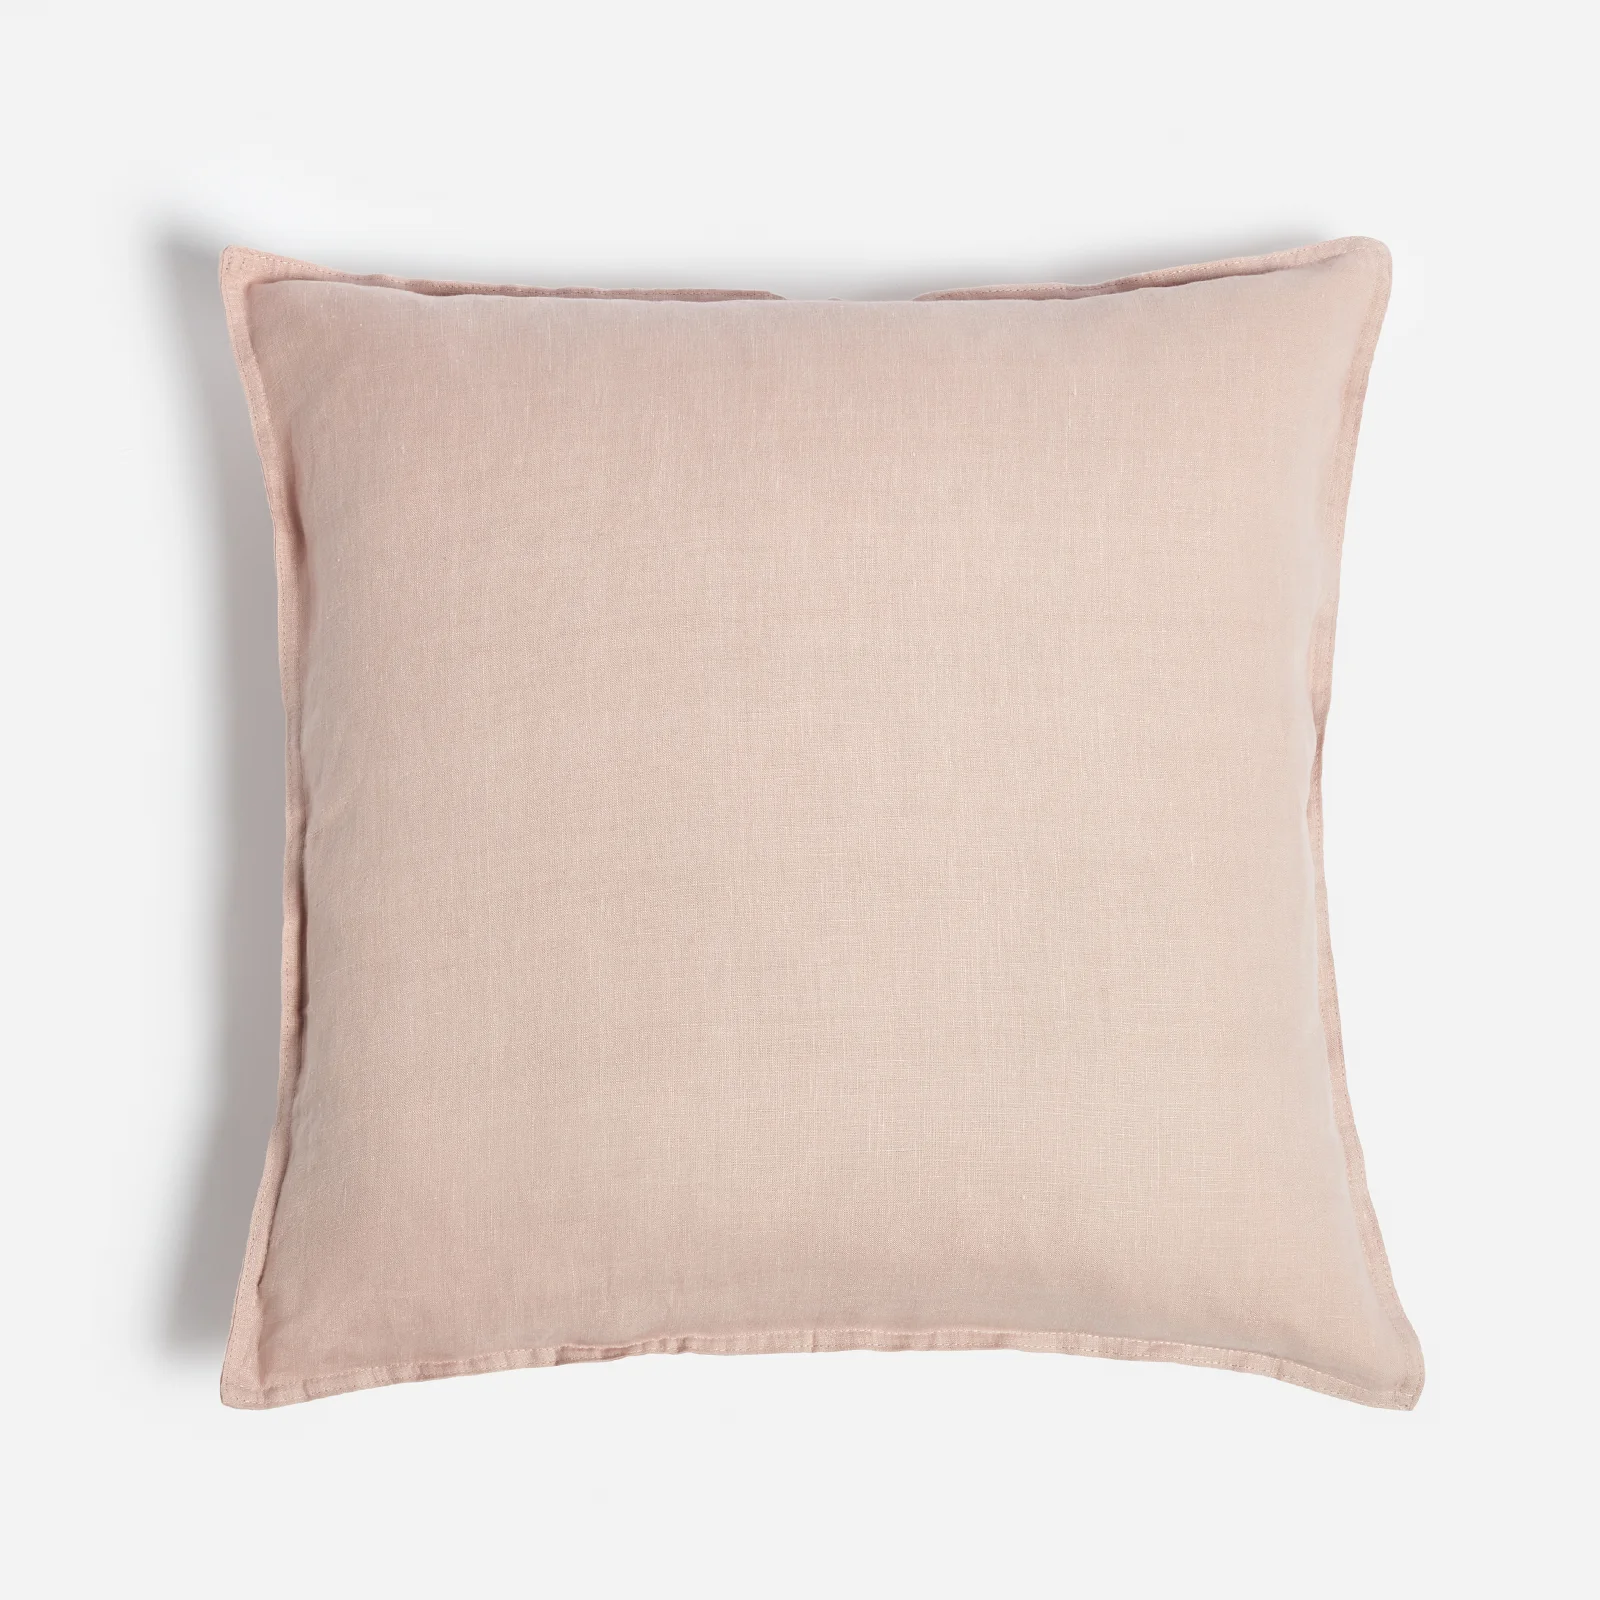 ïn home Linen Cushion - Pink - 50x50cm Image 1